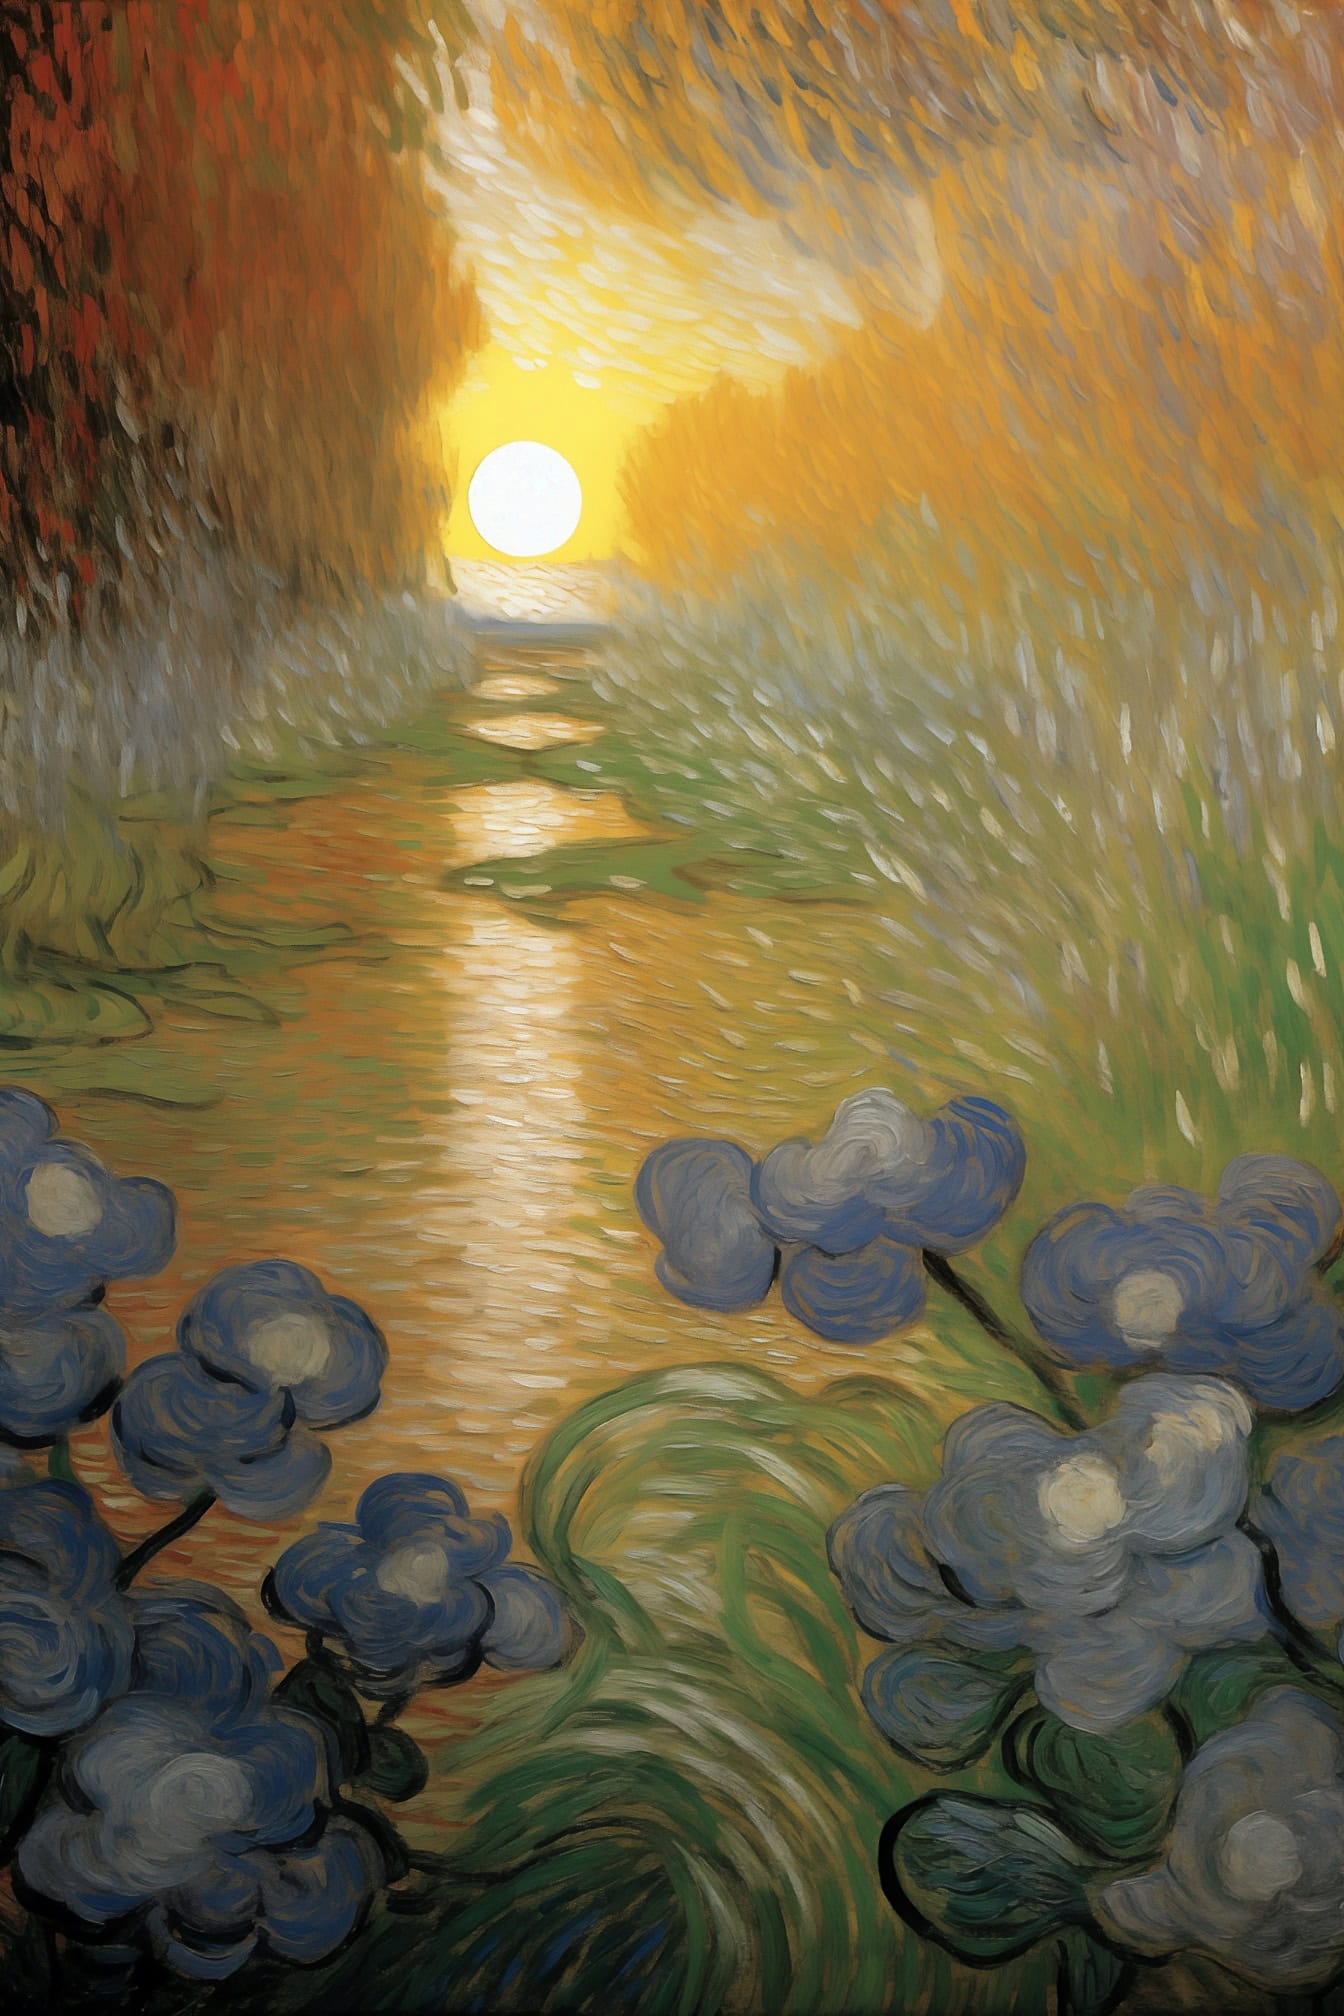 Ünlü sanatçı Van Gogh’un tarzında gün batımında çiçek ve su yağlıboya tablo